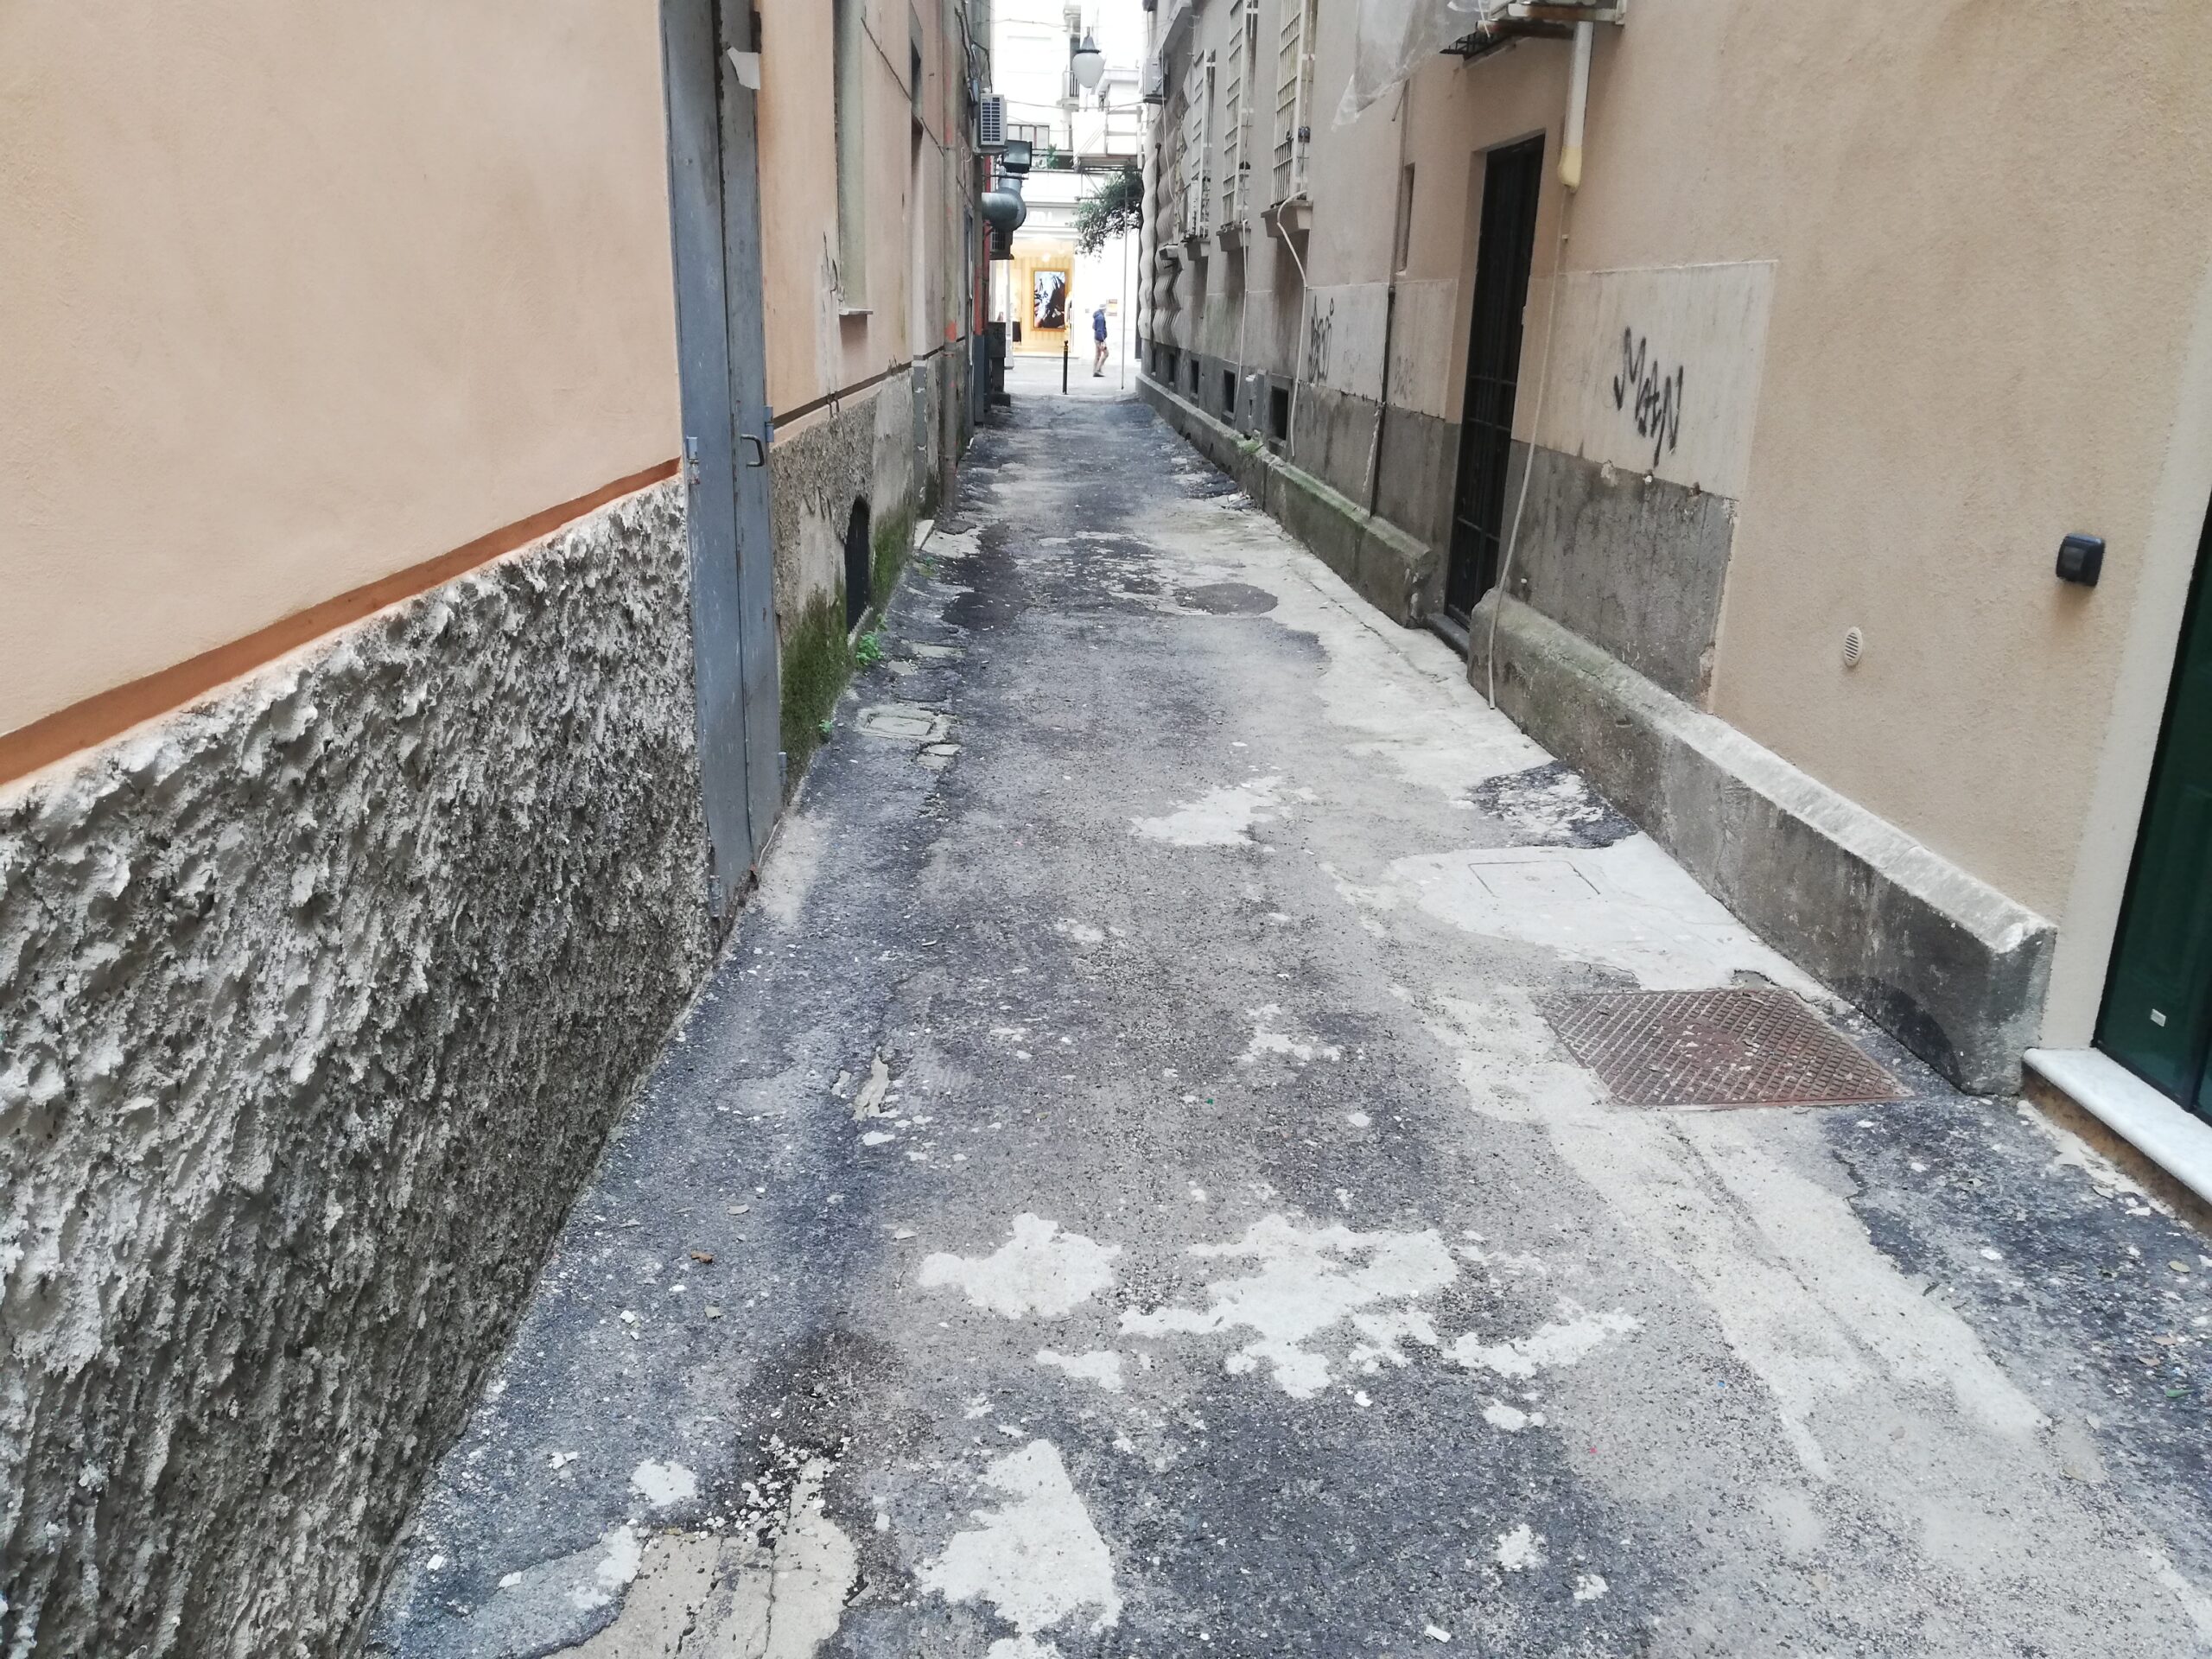 Salerno: via Patella invivibile tra topi, rifiuti e dislivello dell’asfalto